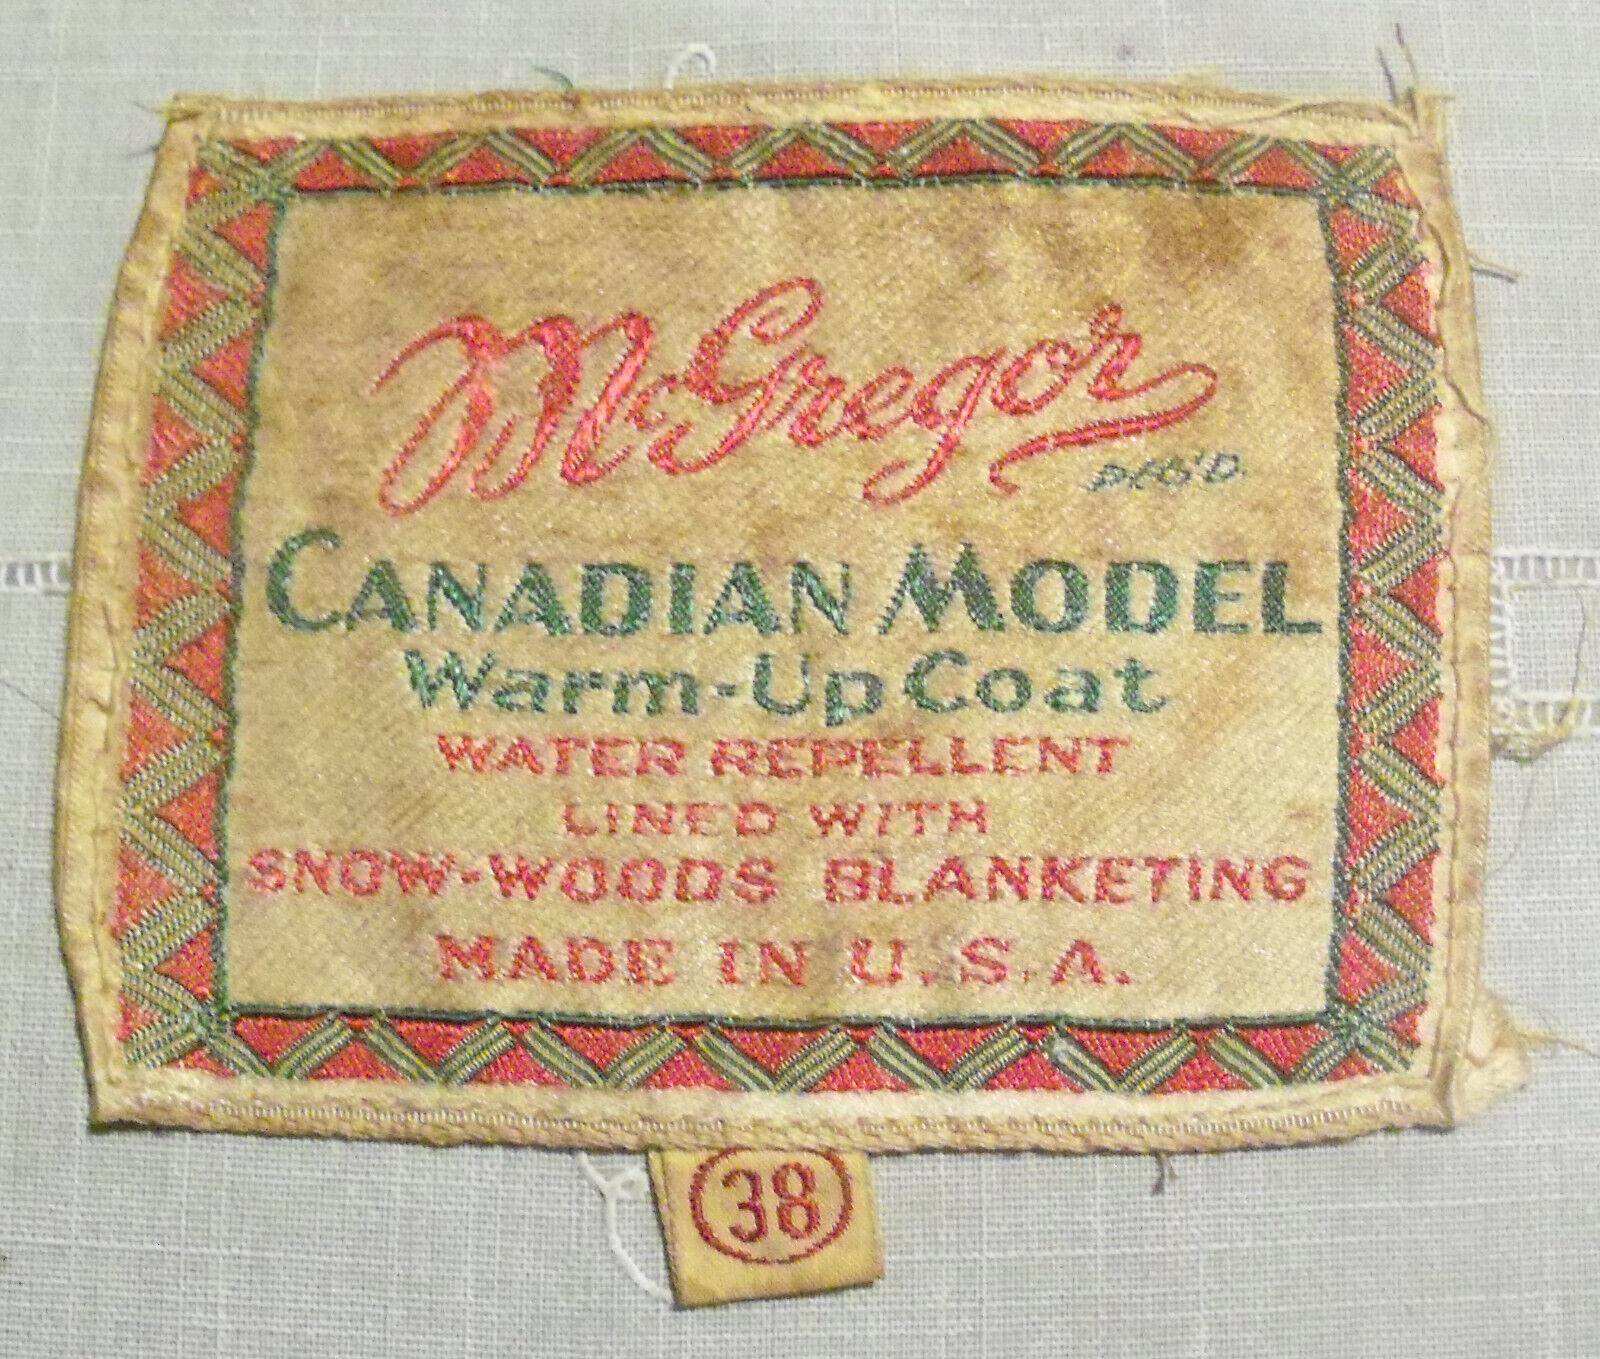 Vintage Coat Tag McGregor Canadian Model Warm-Up Coat Snow-Woods Blanketing USA